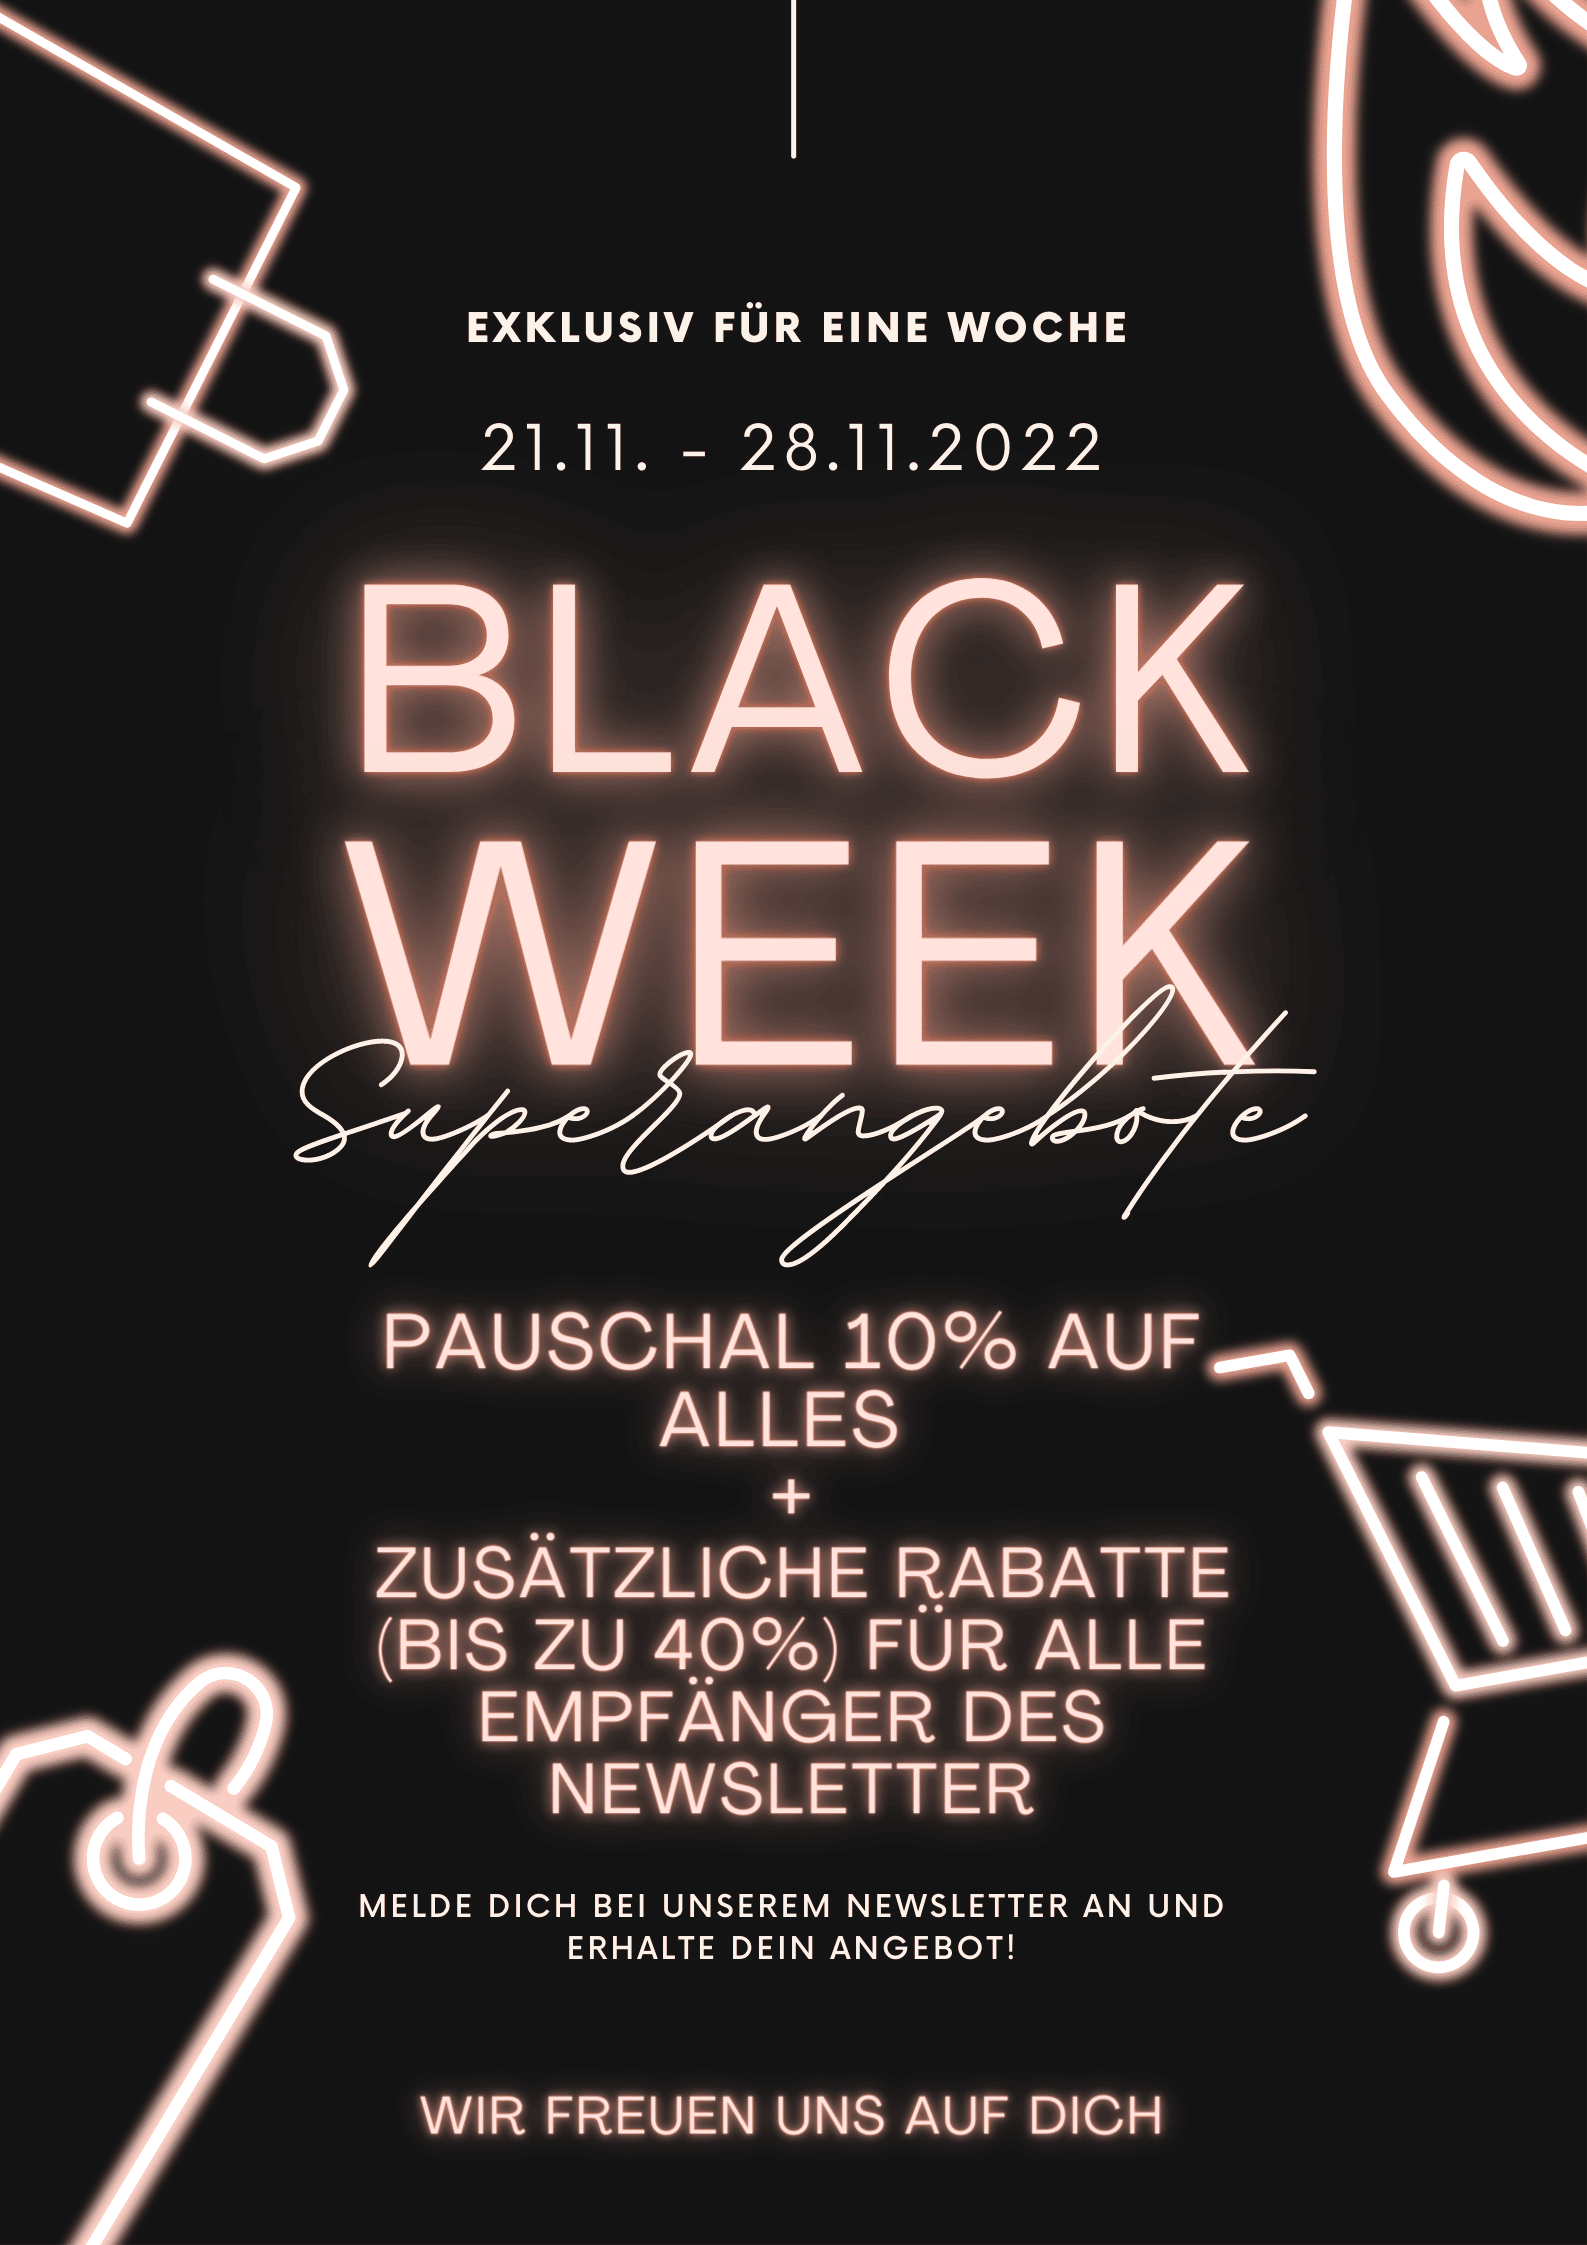 Black week November 2022